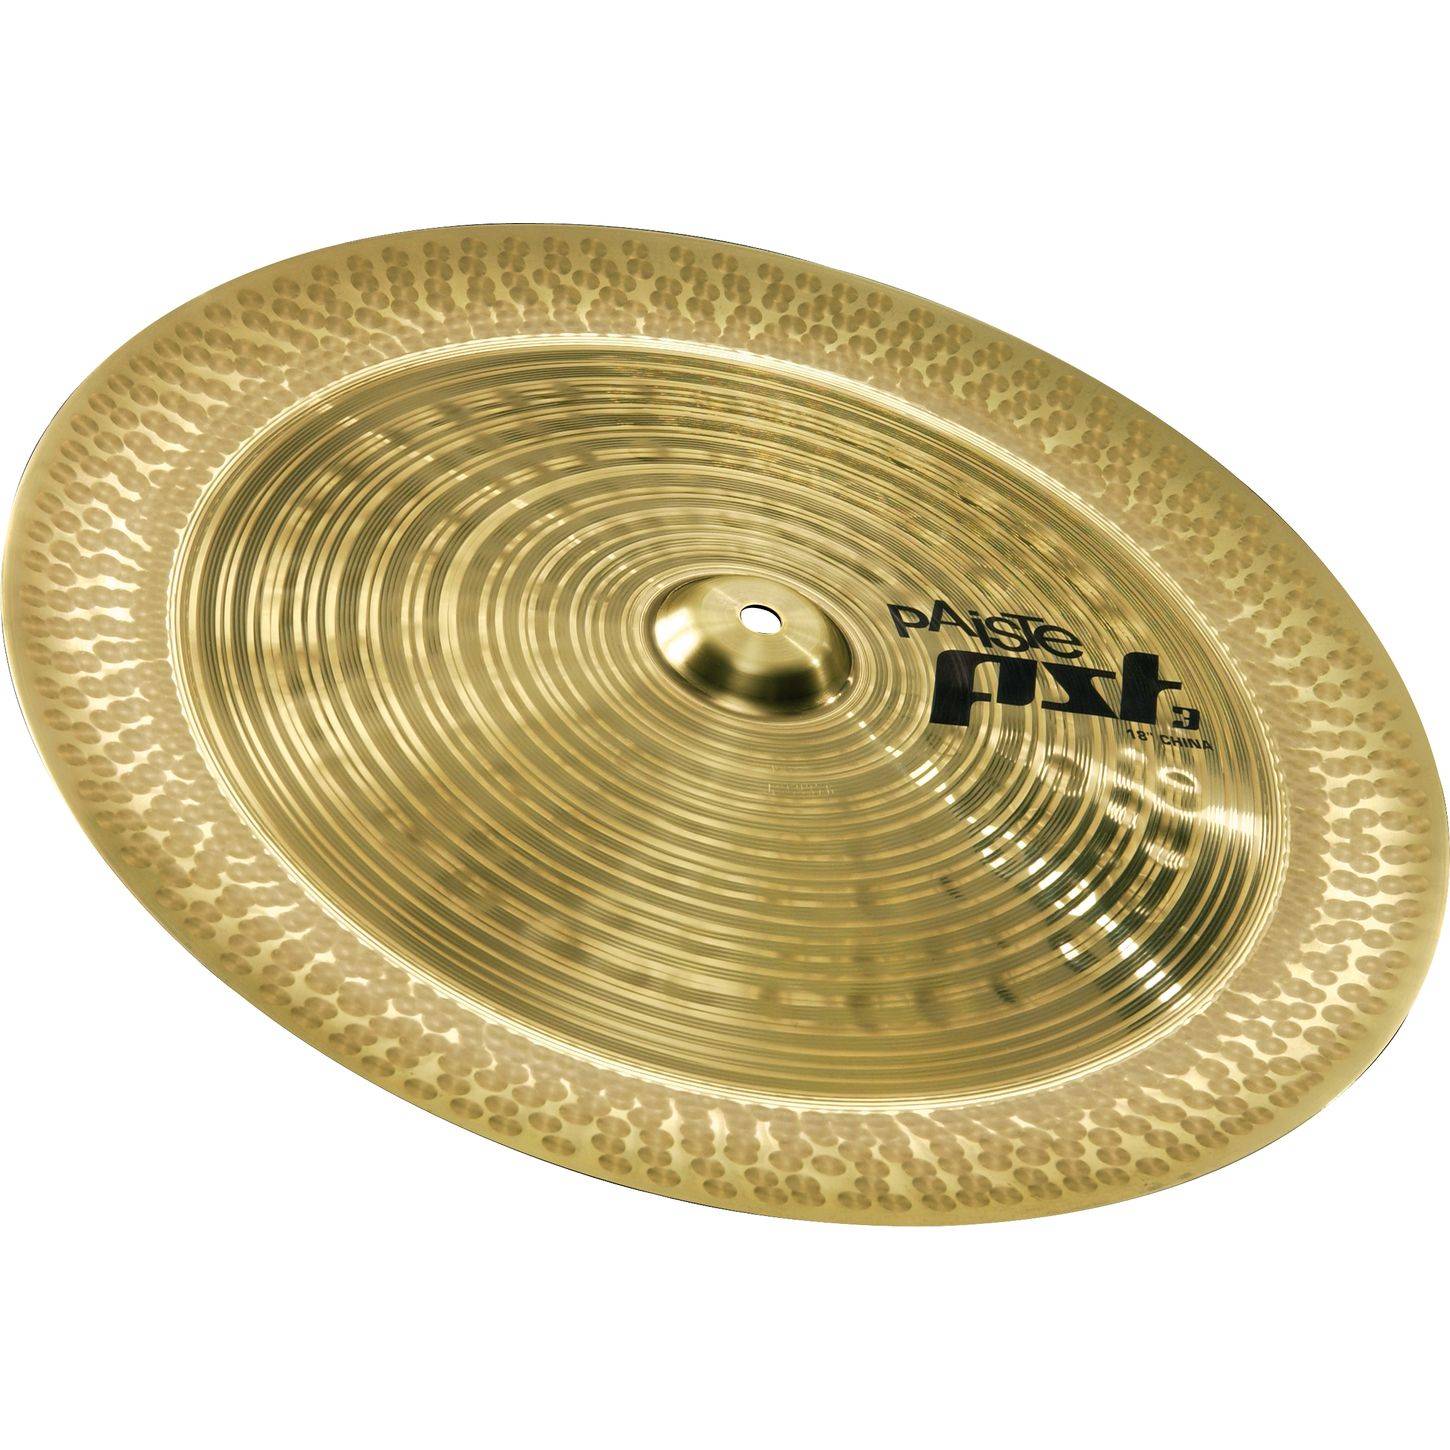 PAISTE PST 3 18'' China Cymbal